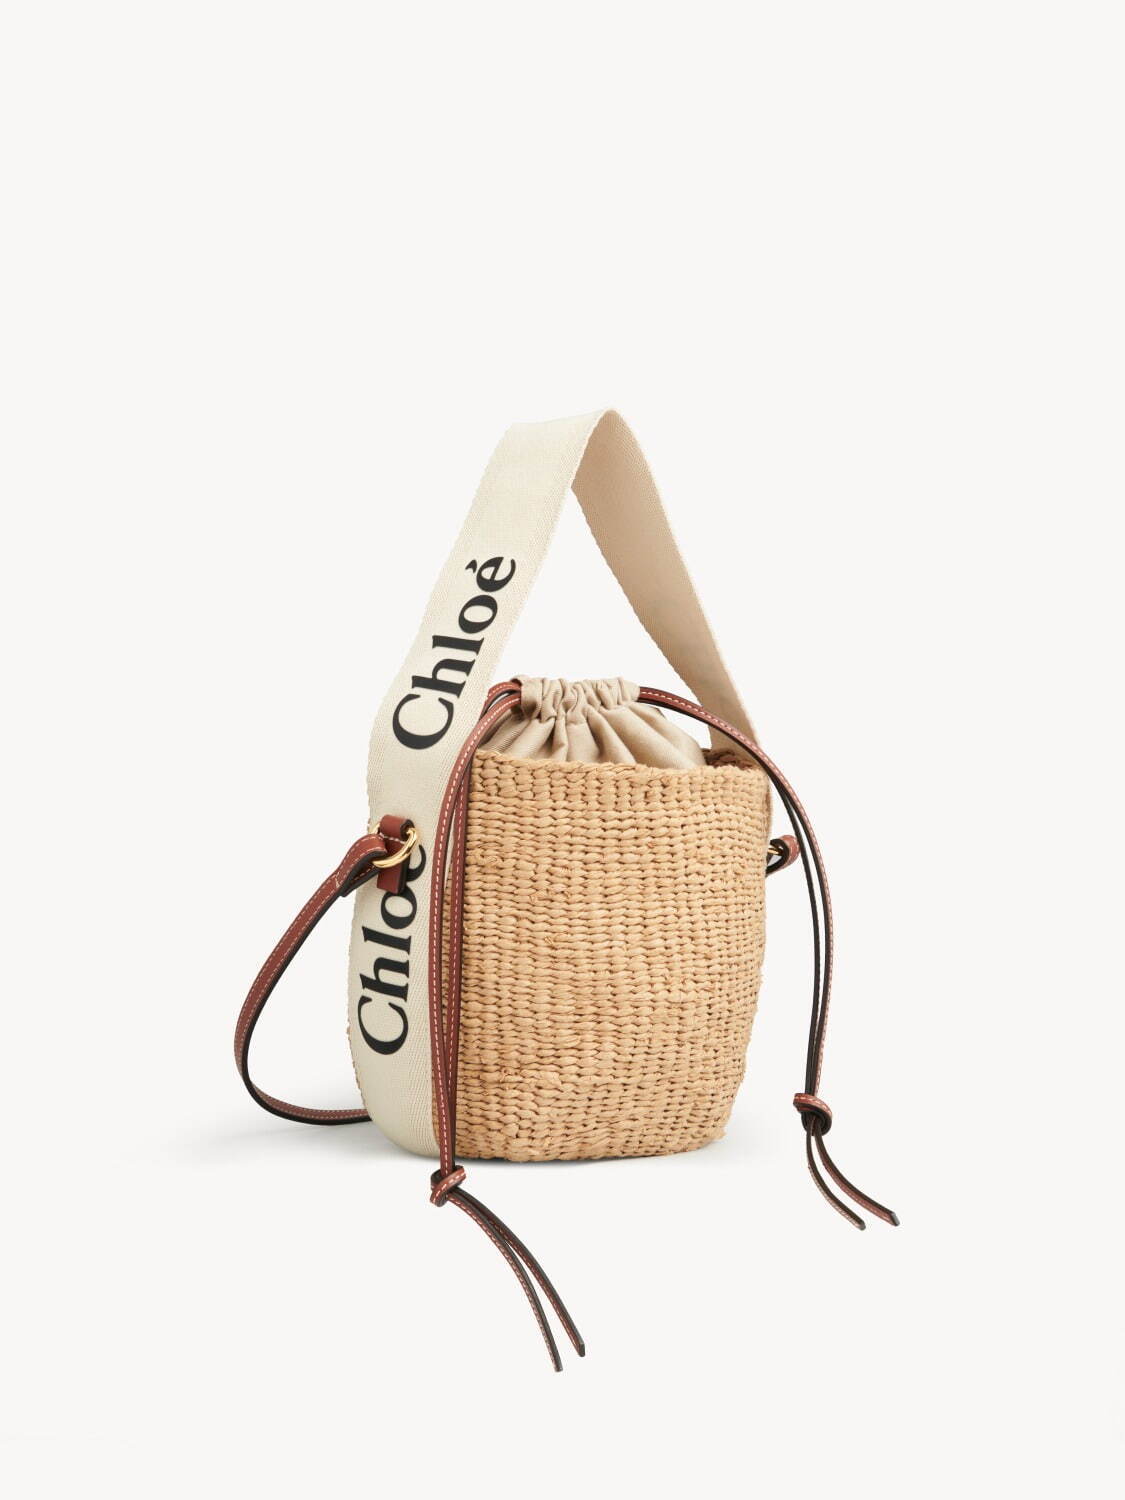 クロエの新作かごバッグ、マルチカラーの“ポンポン”付き＆カラフル